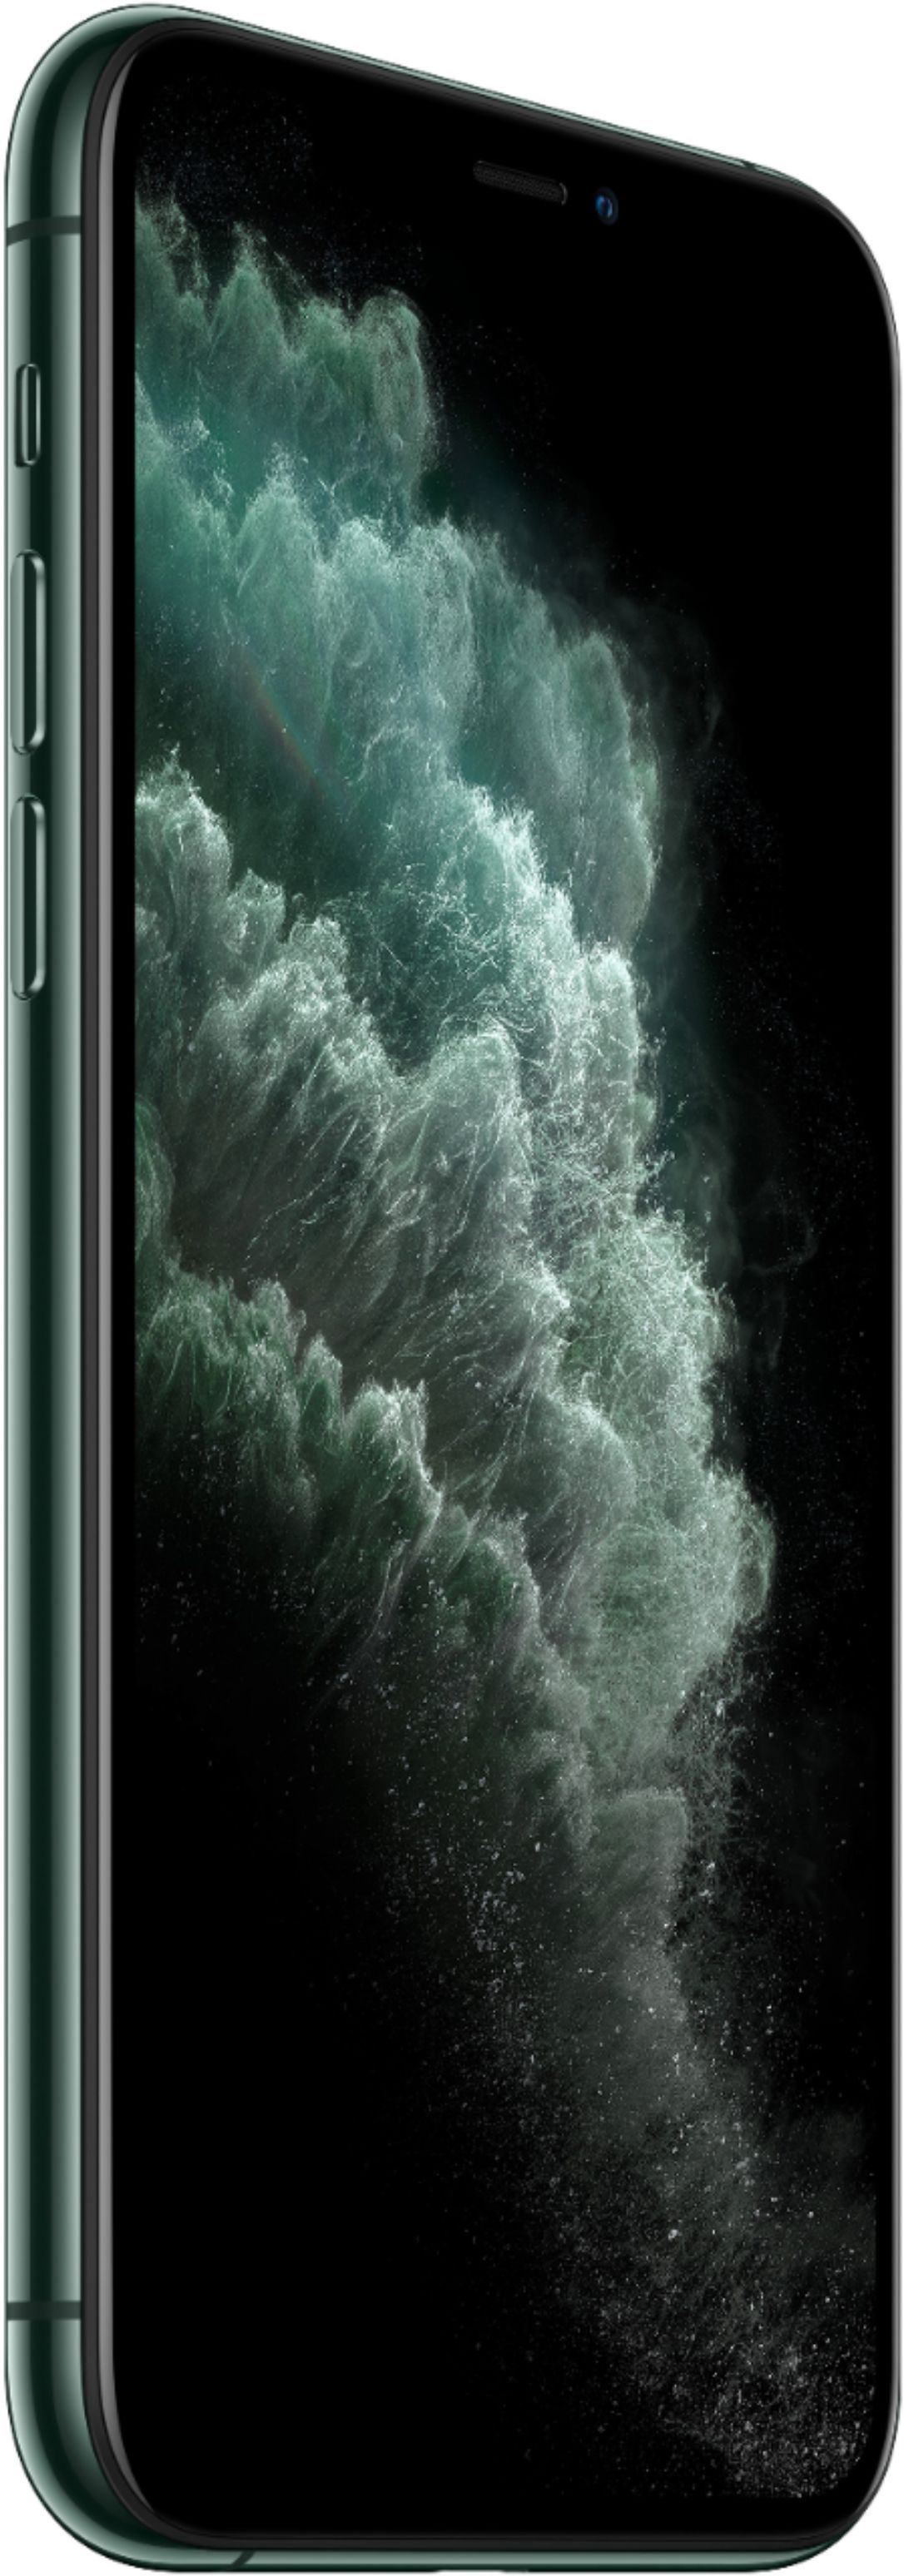 Apple Iphone 11 Pro 256gb Midnight Green Verizon Mwcq2ll A Best Buy